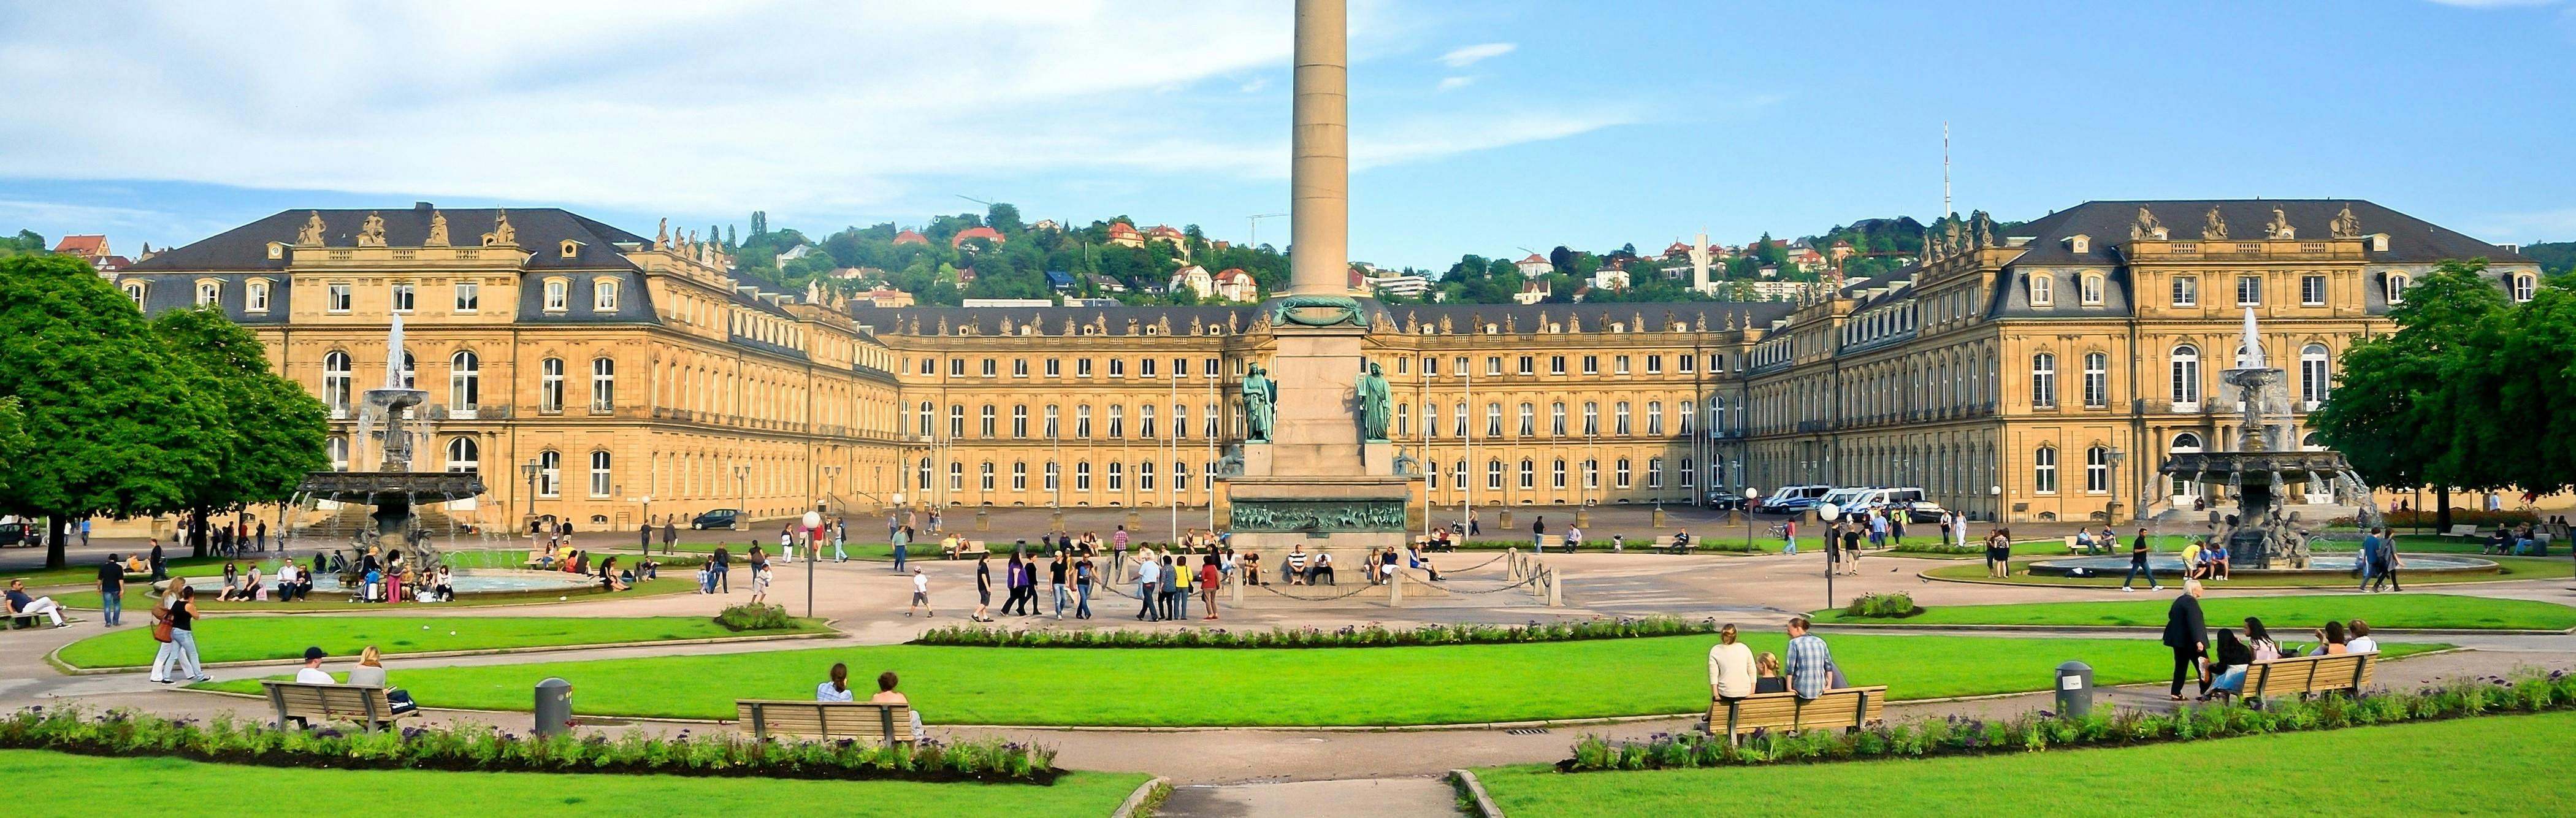 Praça do Palácio de Stuttgart